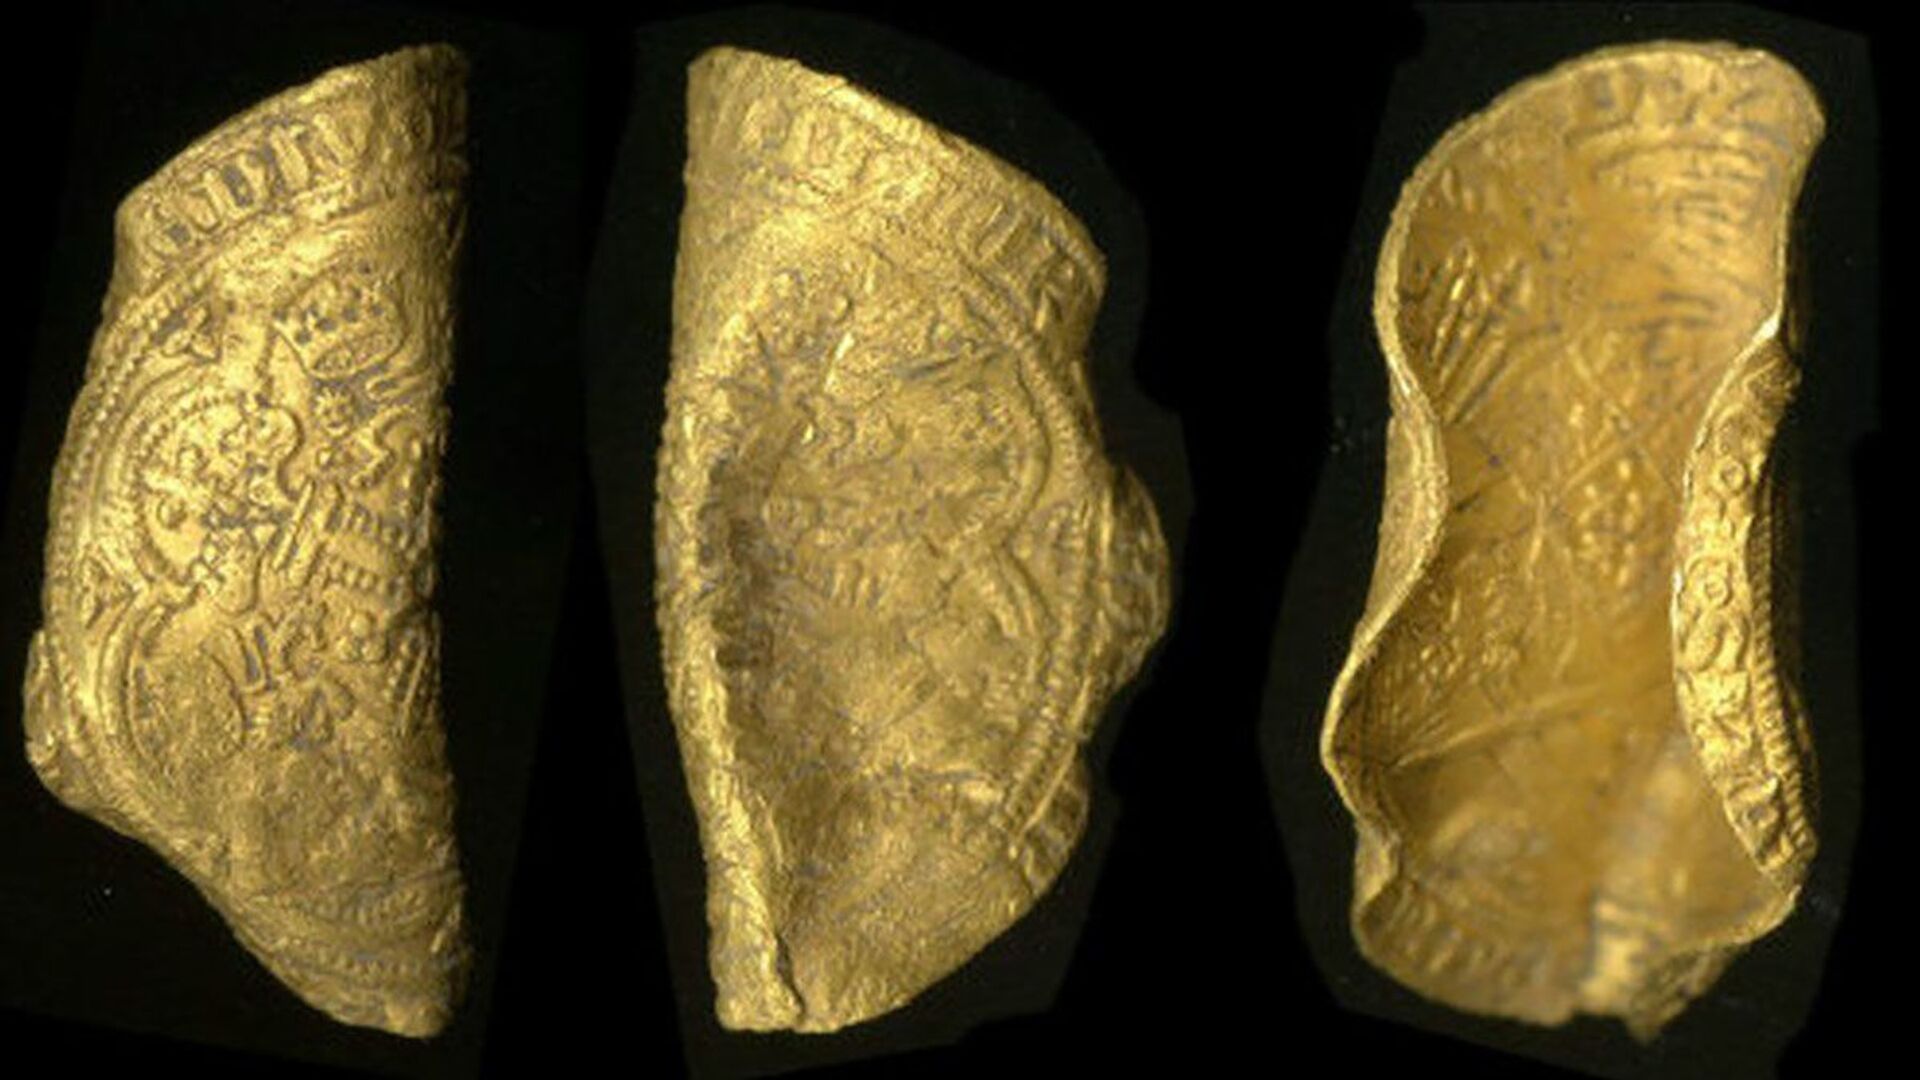 Detectorista de metais britânico desenterra 2 moedas de ouro raras do período da Peste Negra (FOTO) - Sputnik Brasil, 1920, 24.06.2021